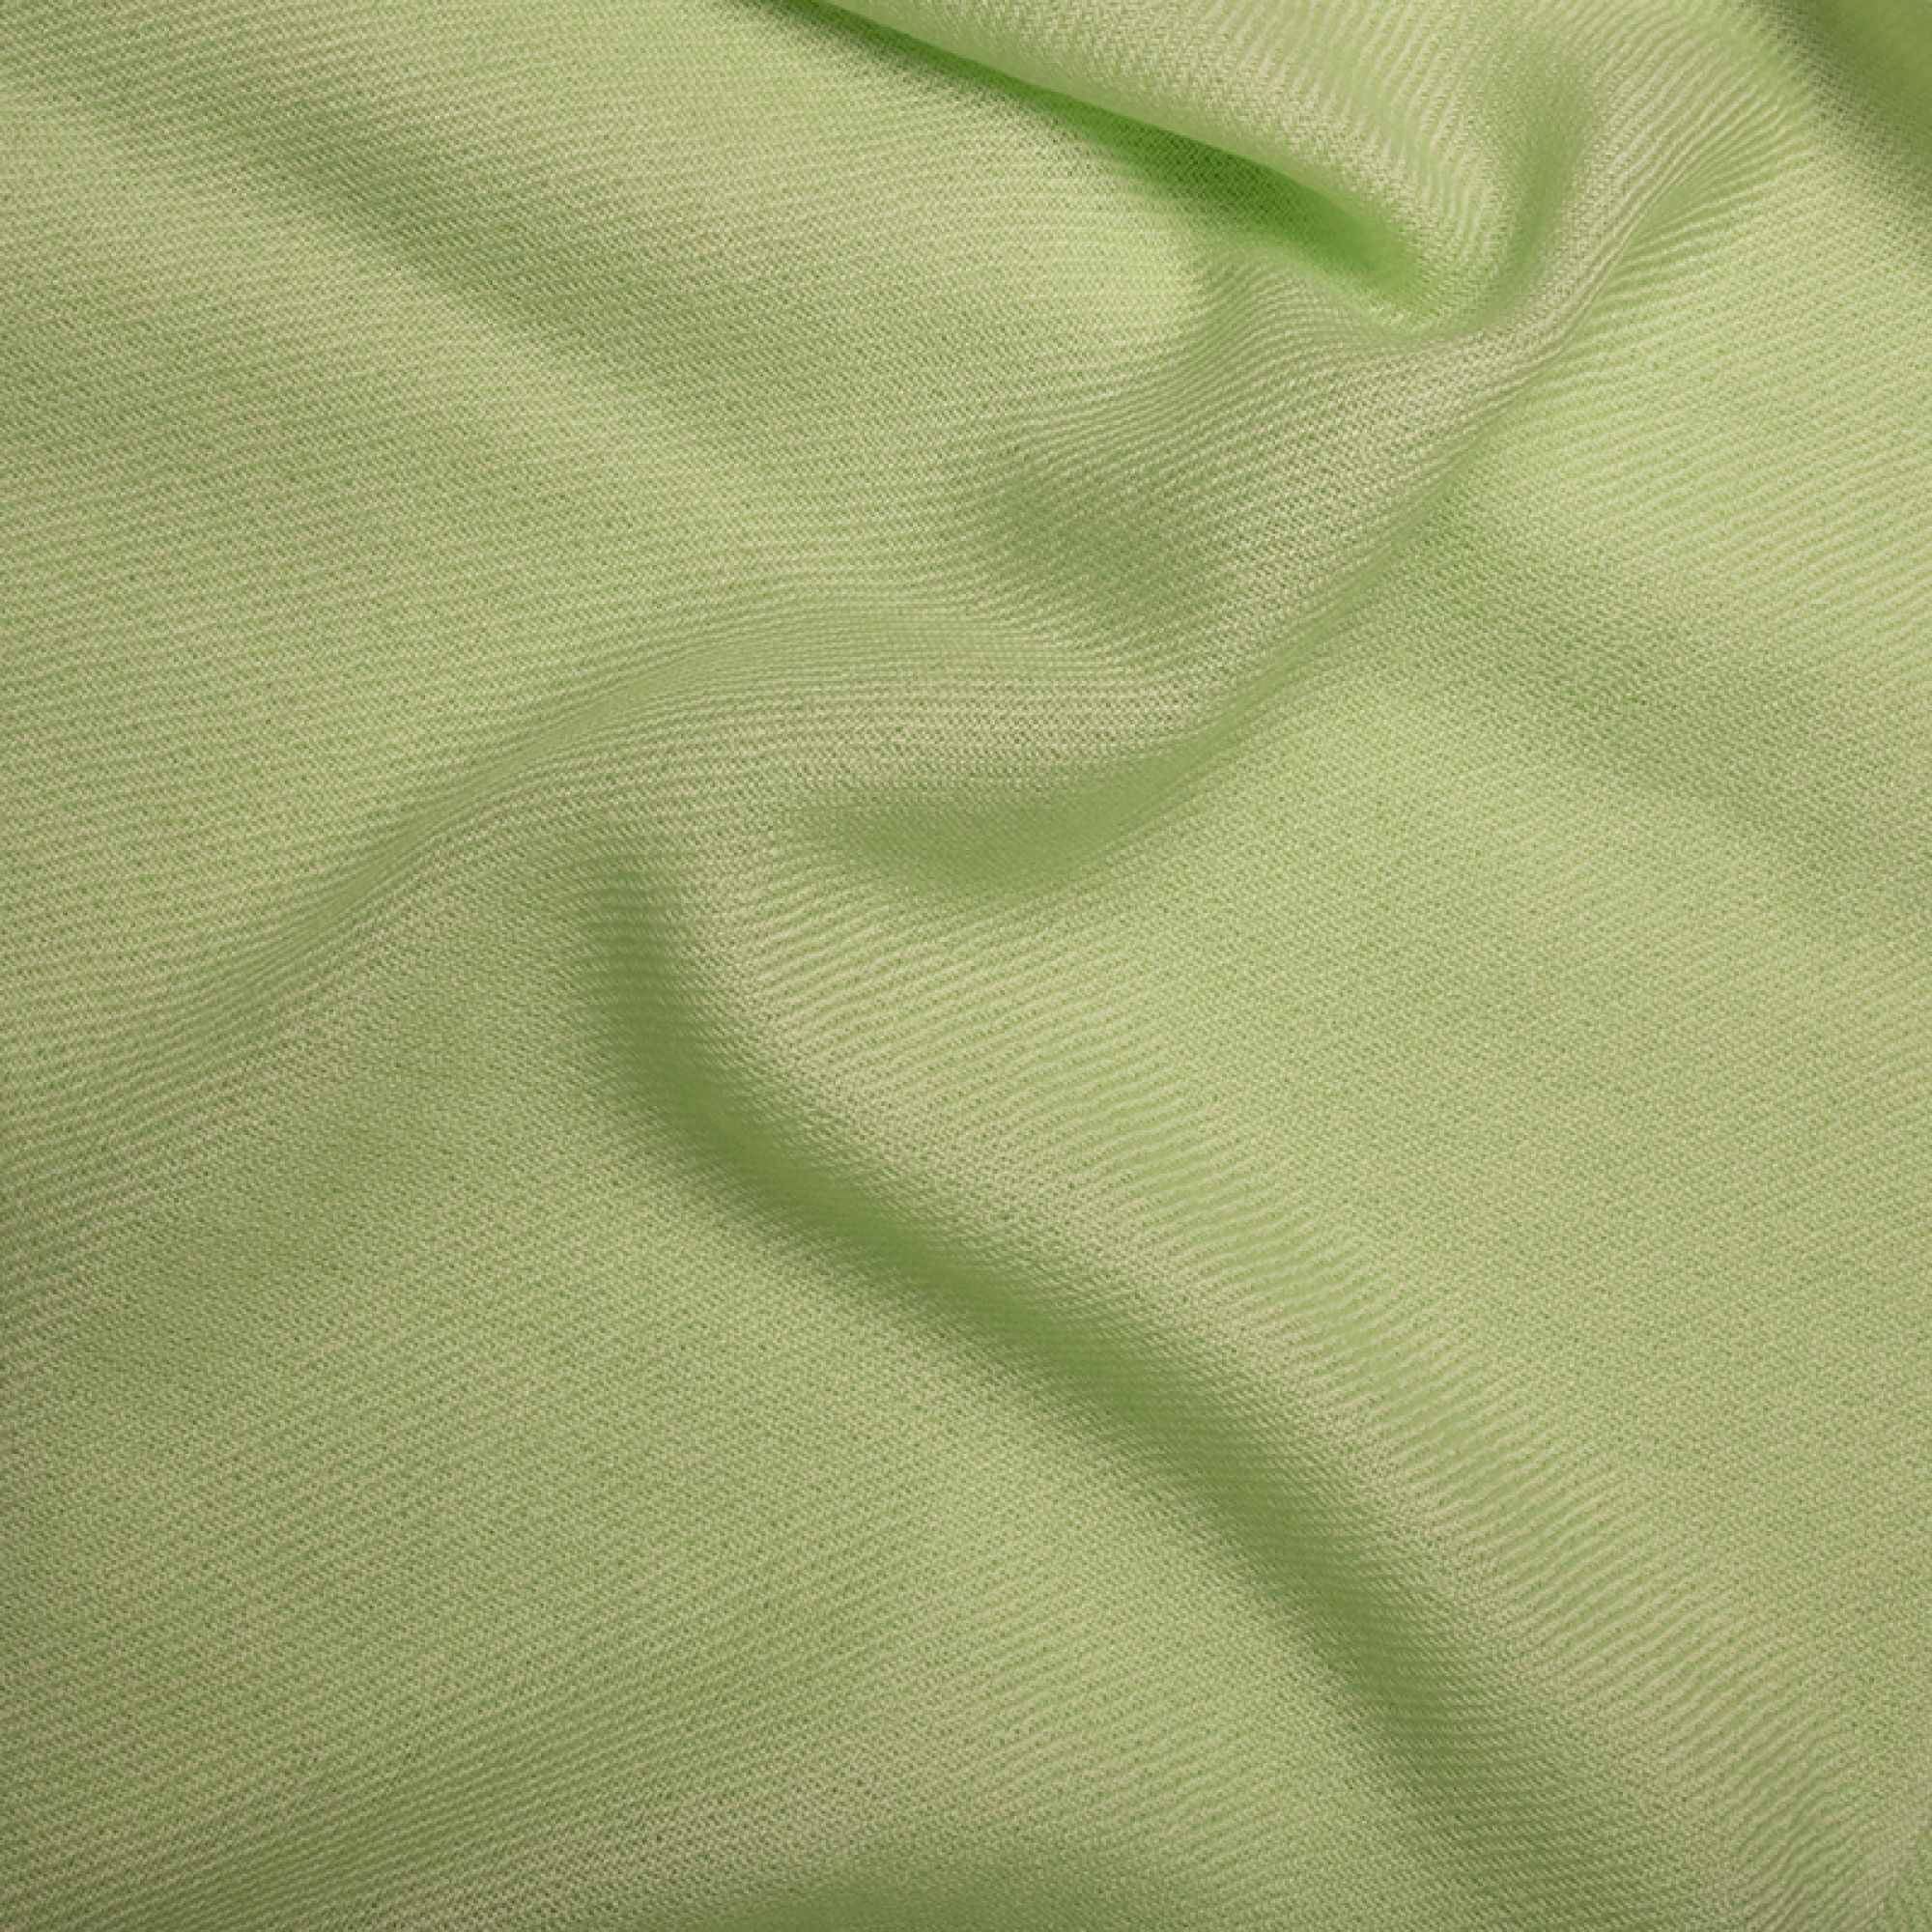 Cachemire accessoires homewear toodoo plain s 140 x 200 vert pale 140 x 200 cm